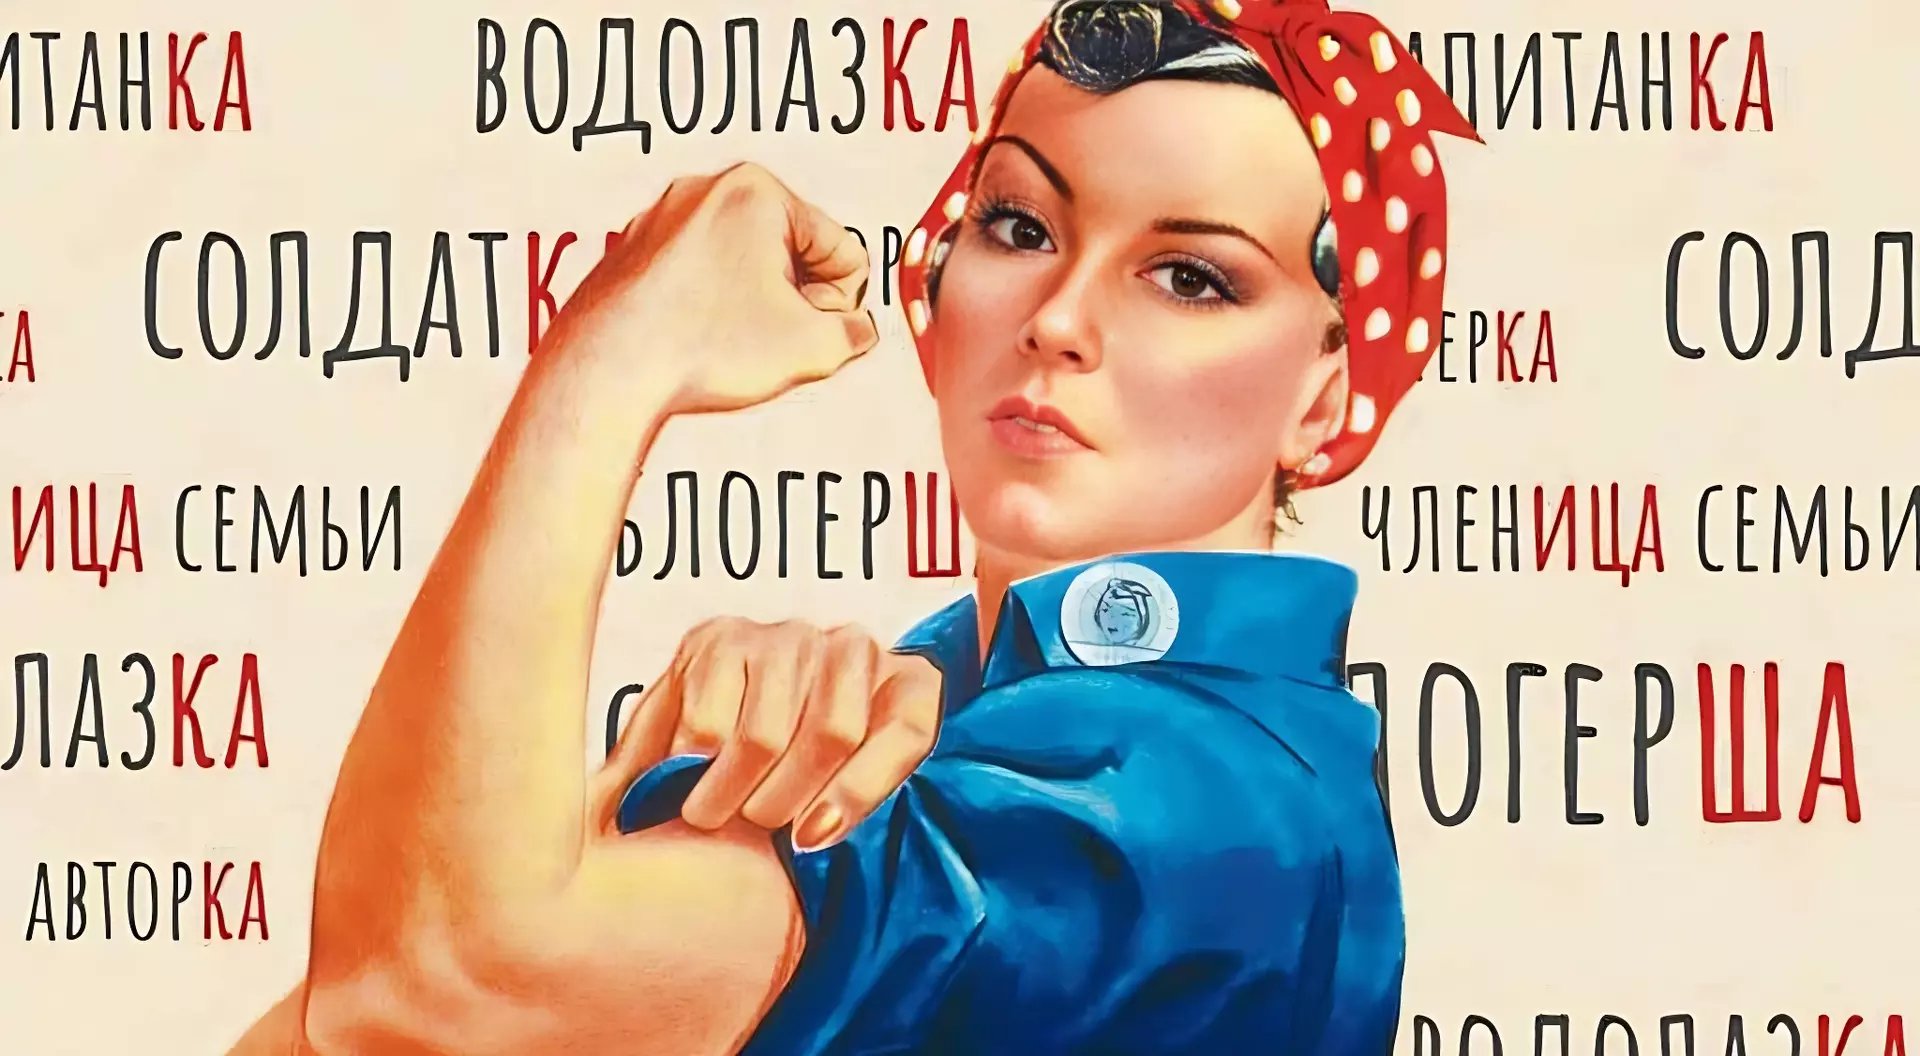 Феминитивы. Феминитивы картинки. Феминитивы на советских плакатах. Феминитивы примеры. Феминитивы в рф